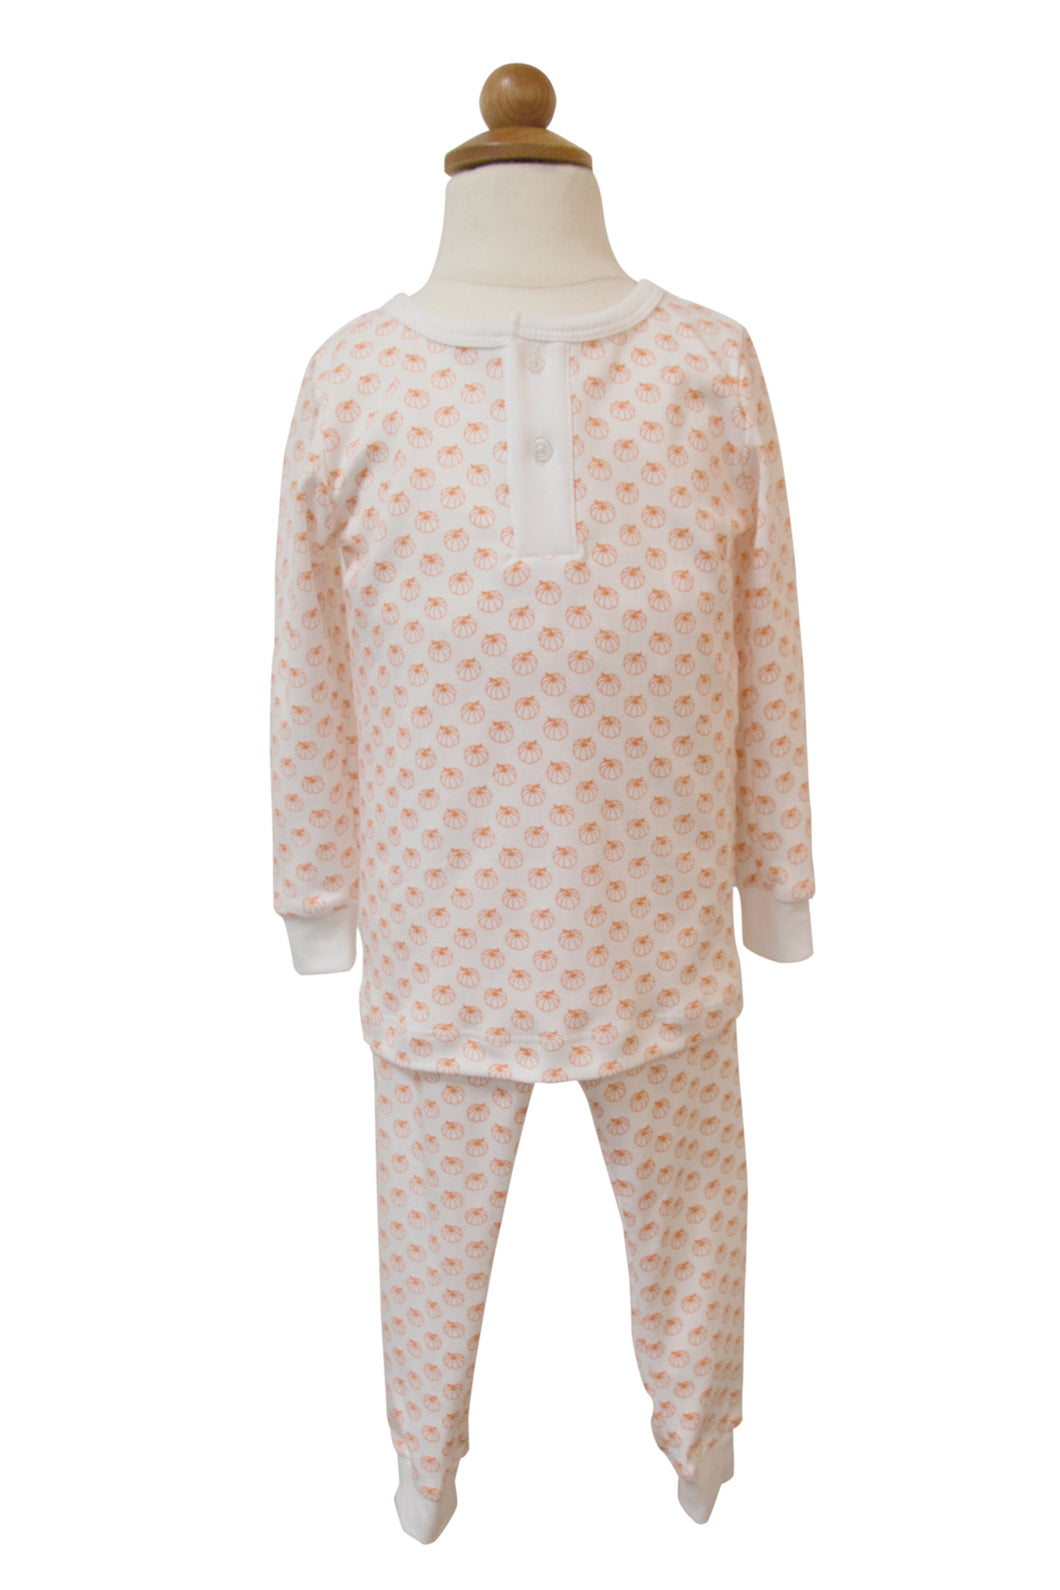 Boy’s Pumpkin 2pc Pajama Set